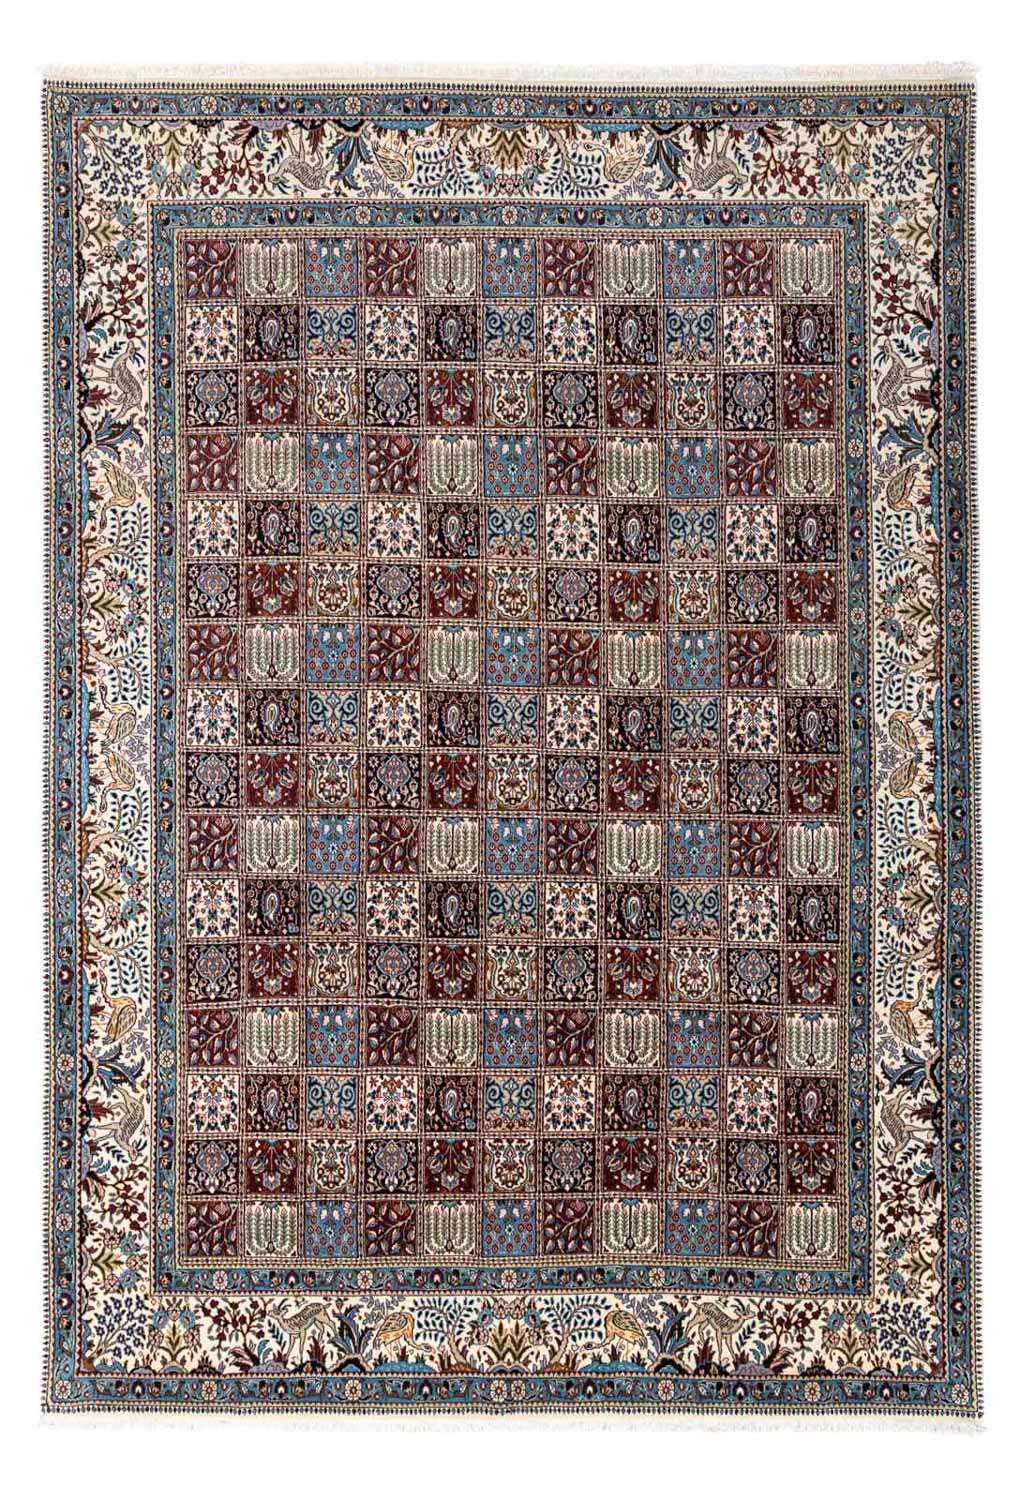 Tapis persan - Classique - 358 x 256 cm - bleu clair